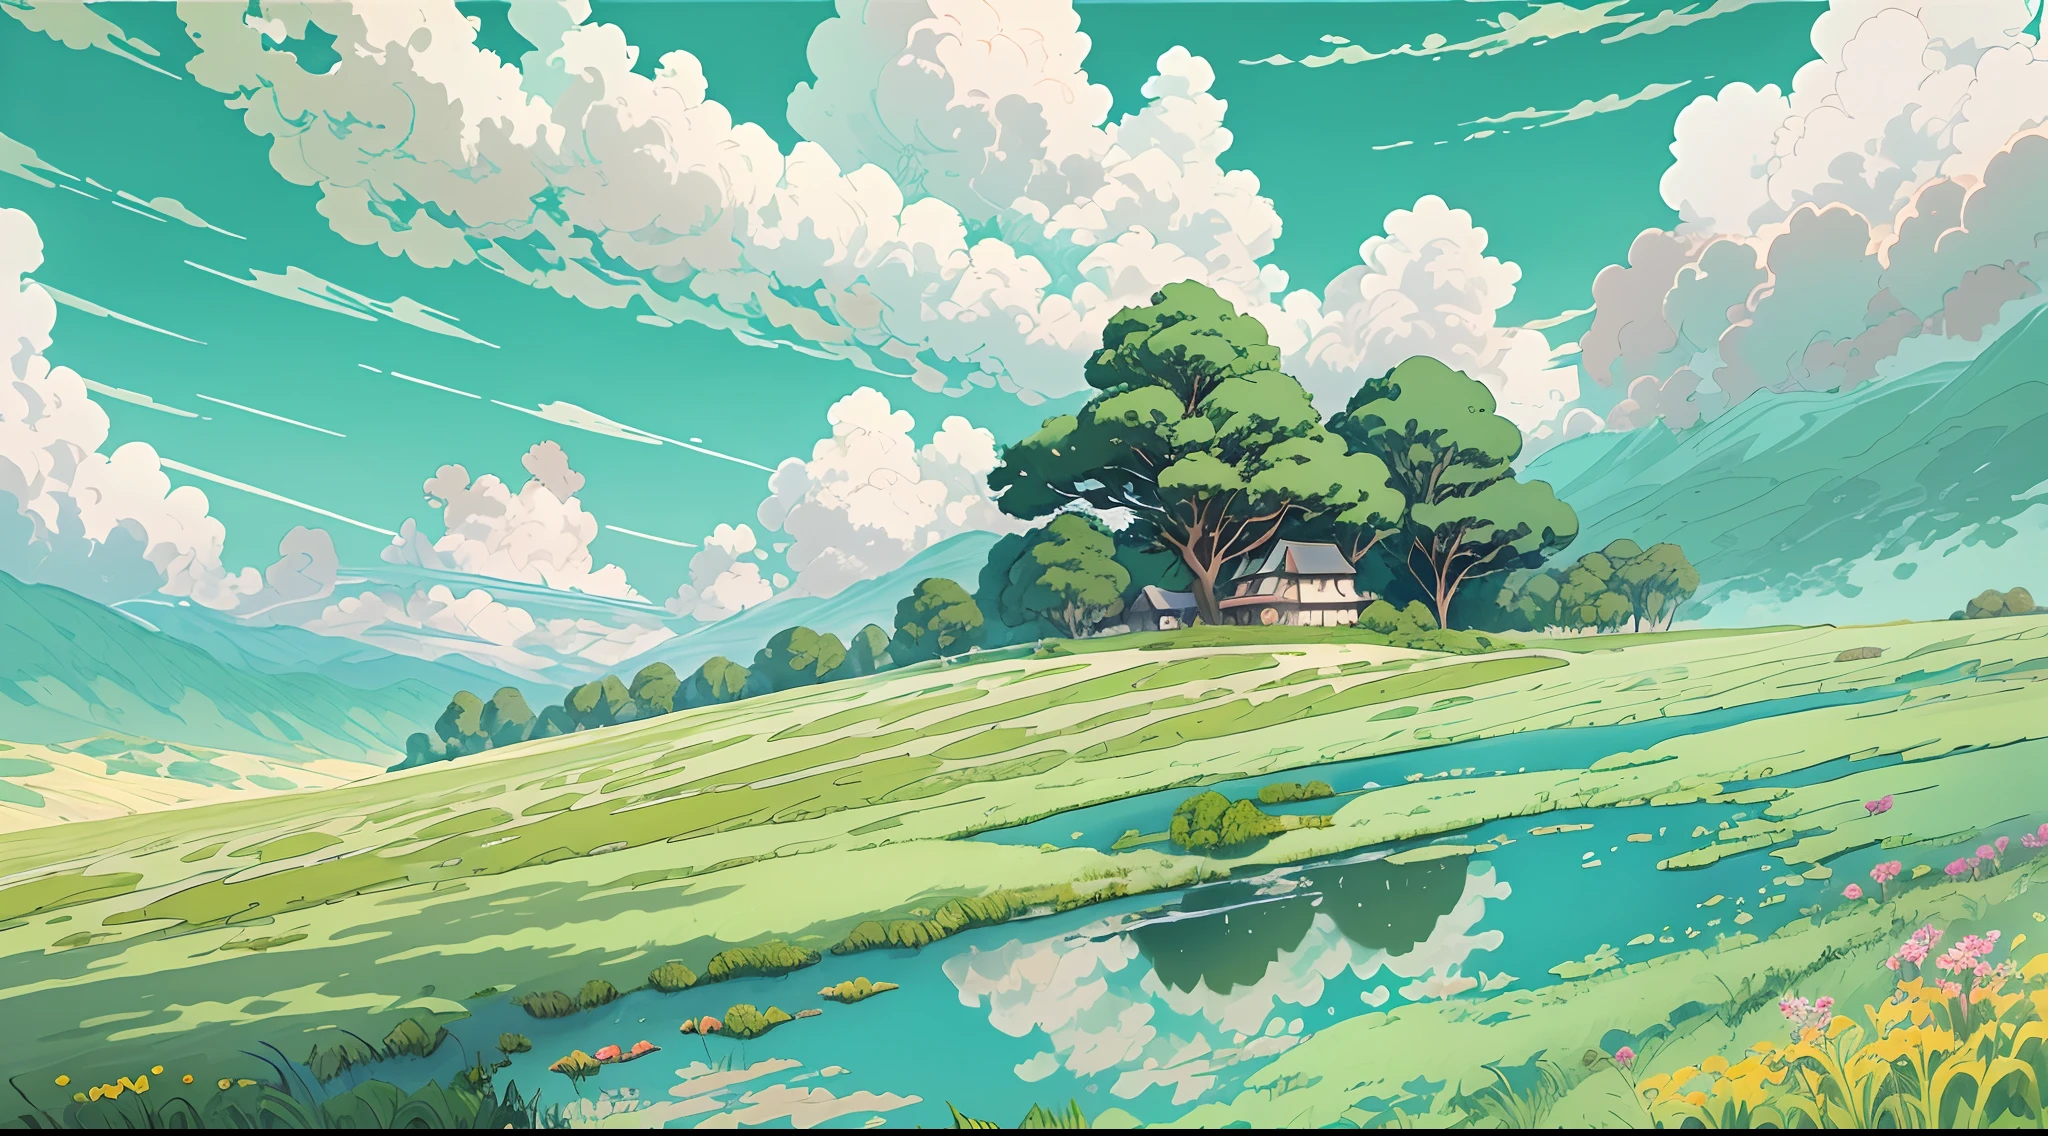 Realista, Auténtico, hermoso y sorprendente paisaje pintura al óleo Studio Ghibli Hayao Miyazaki&#39;Pastizal de pétalos con cielo azul y nubes blancas --v6